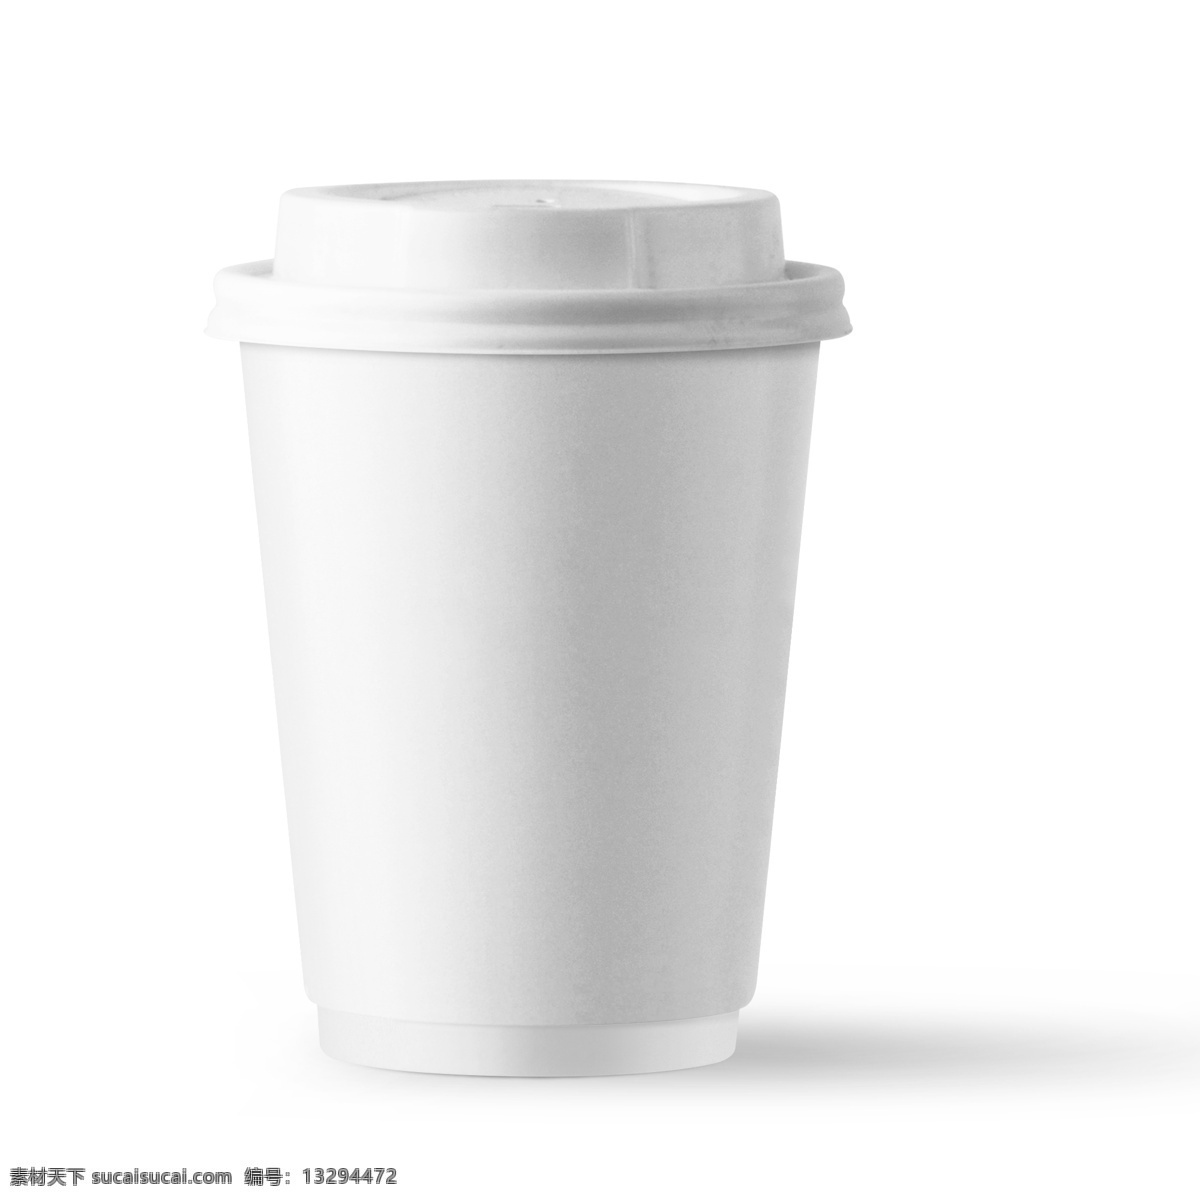 星 巴克 纸杯 咖啡杯 分 图 层 商用 分图层 文艺风格 星巴克 可商用